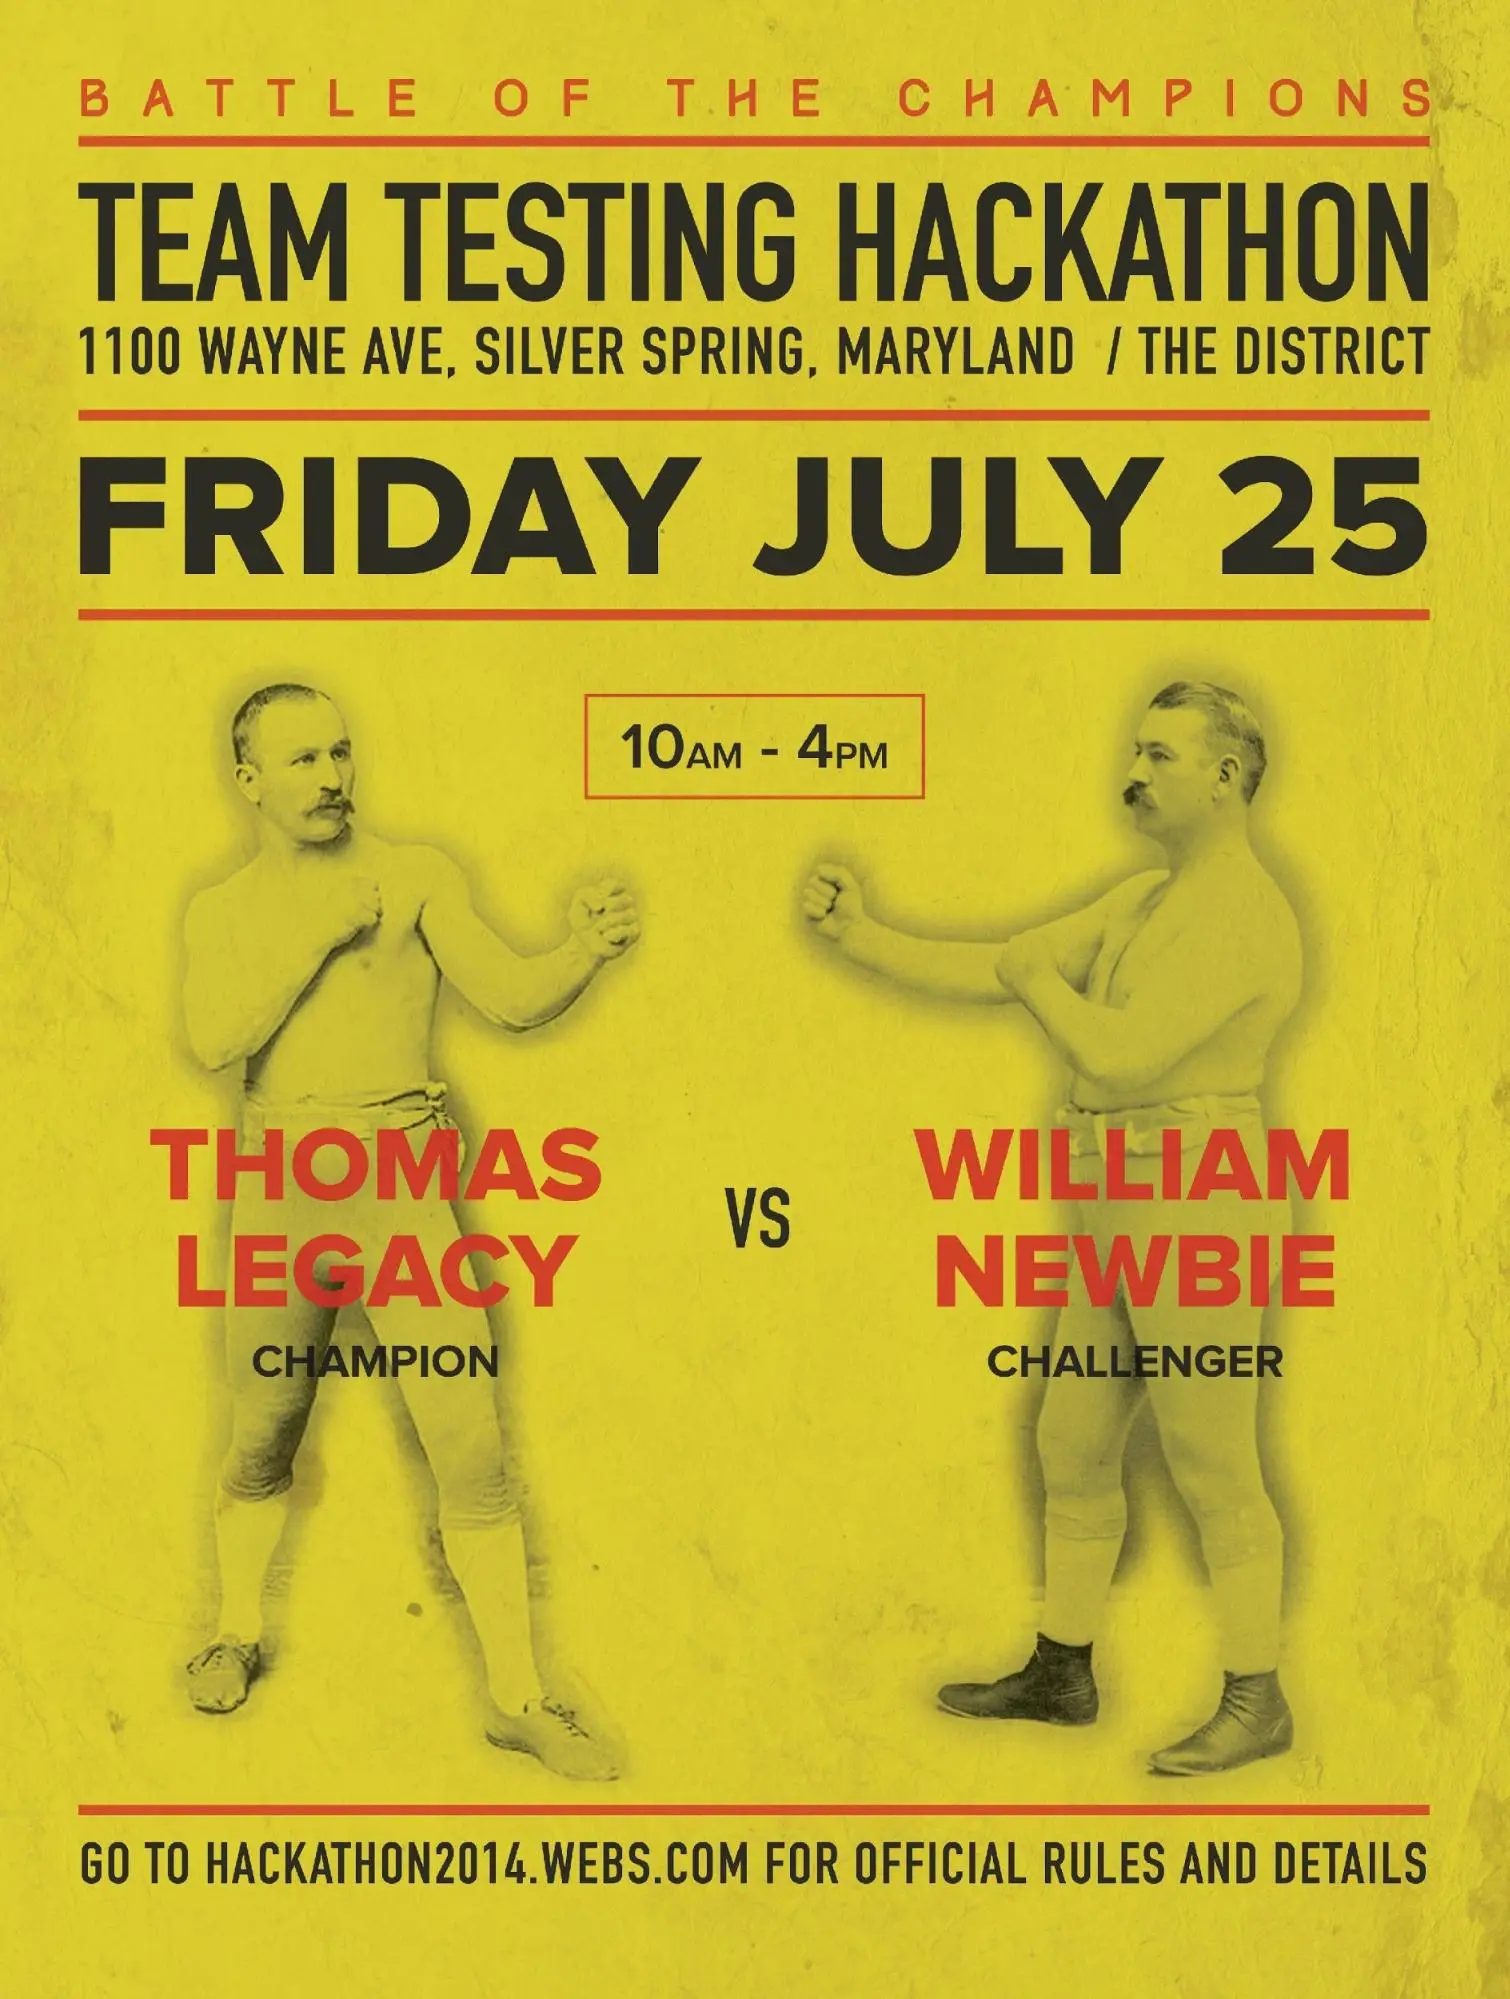 Testing hackathon poster